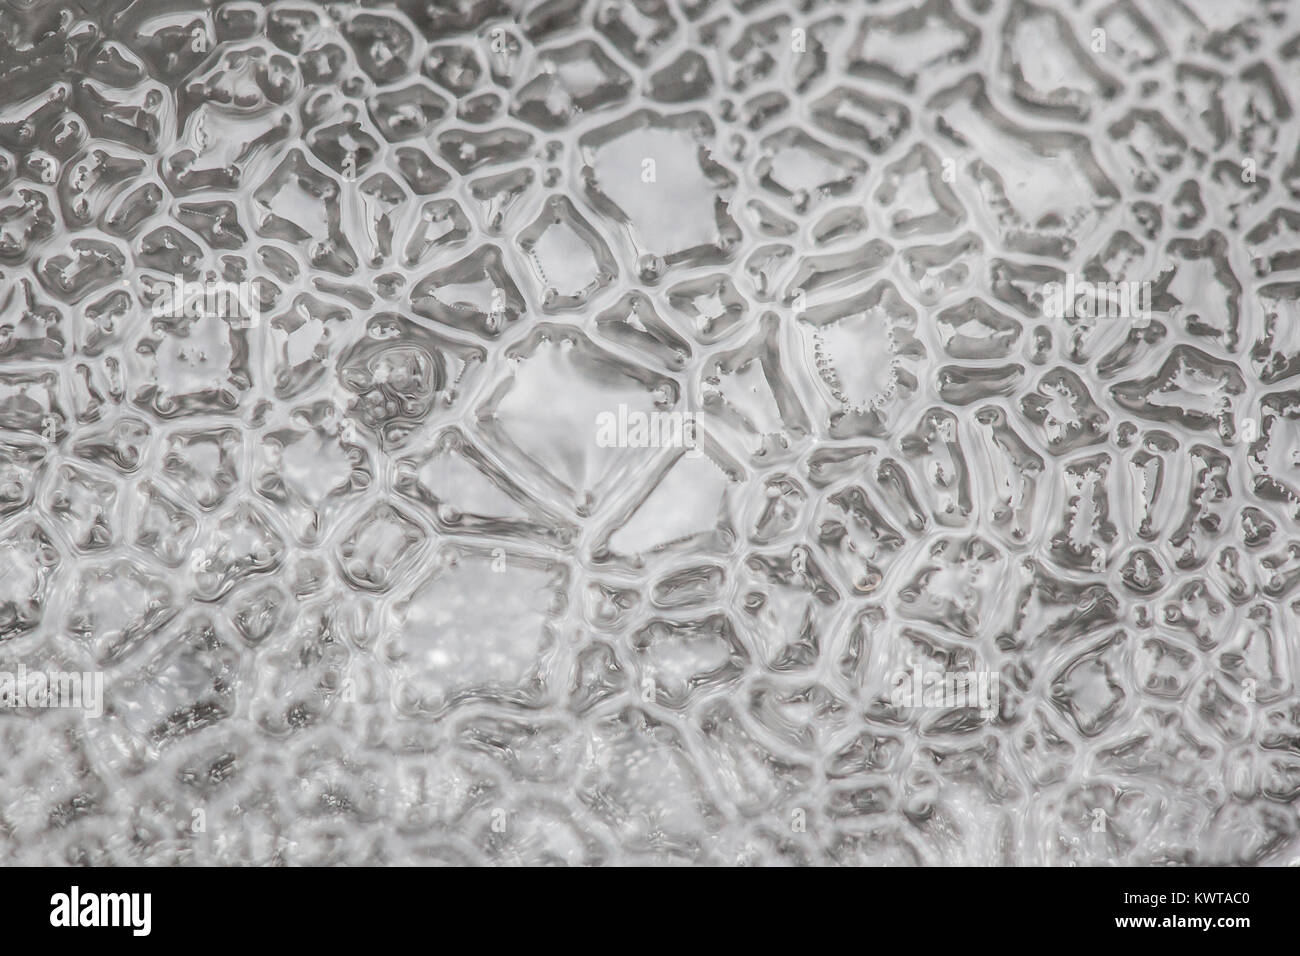 Les modèles complexes abstract close up sur un morceau de glace. Banque D'Images